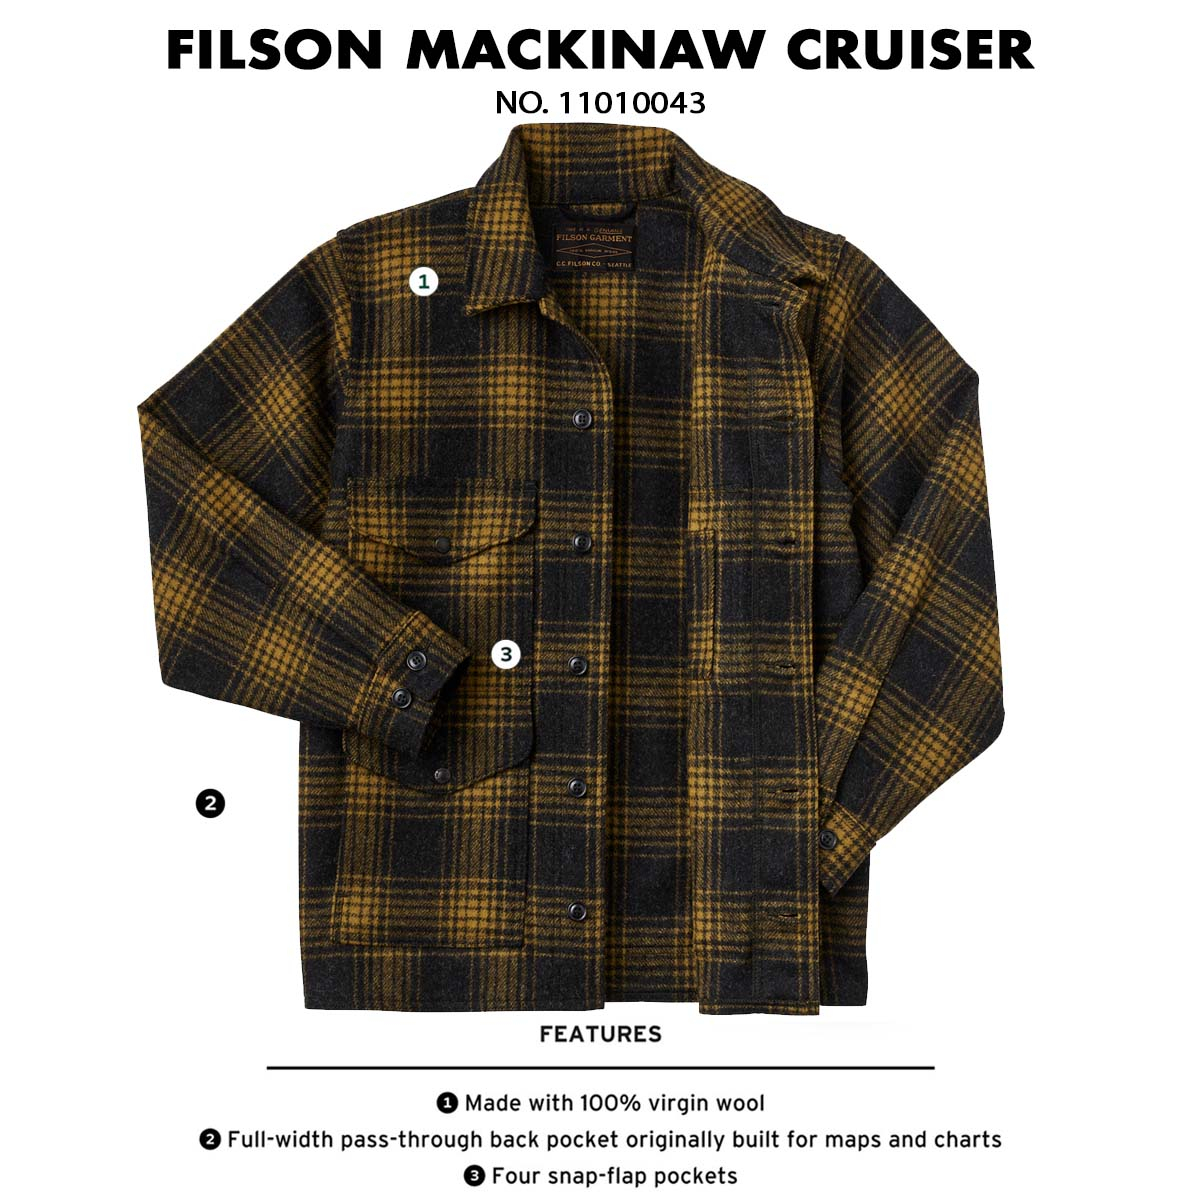 Filson Mackinaw Wool Cruiser Jacket Gold Ochre Omber, patentiert in 1914 und noch immer gefragt, ist aus 100% virgin wool für mehr Komfort hergestellt